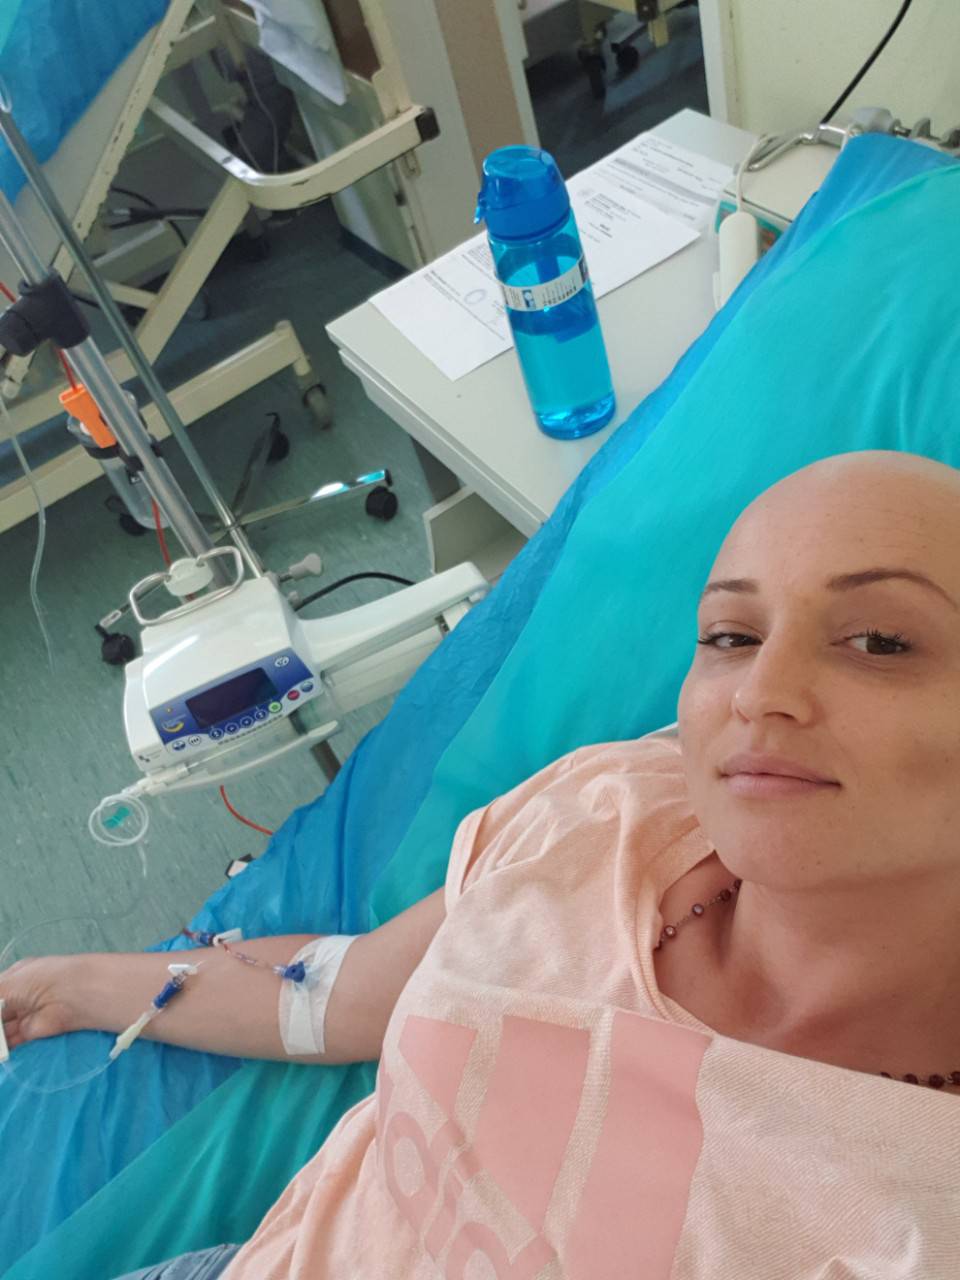 Tea, hrabra lavica iz Osijeka: Pobijedila sam, moj rak je crk'o